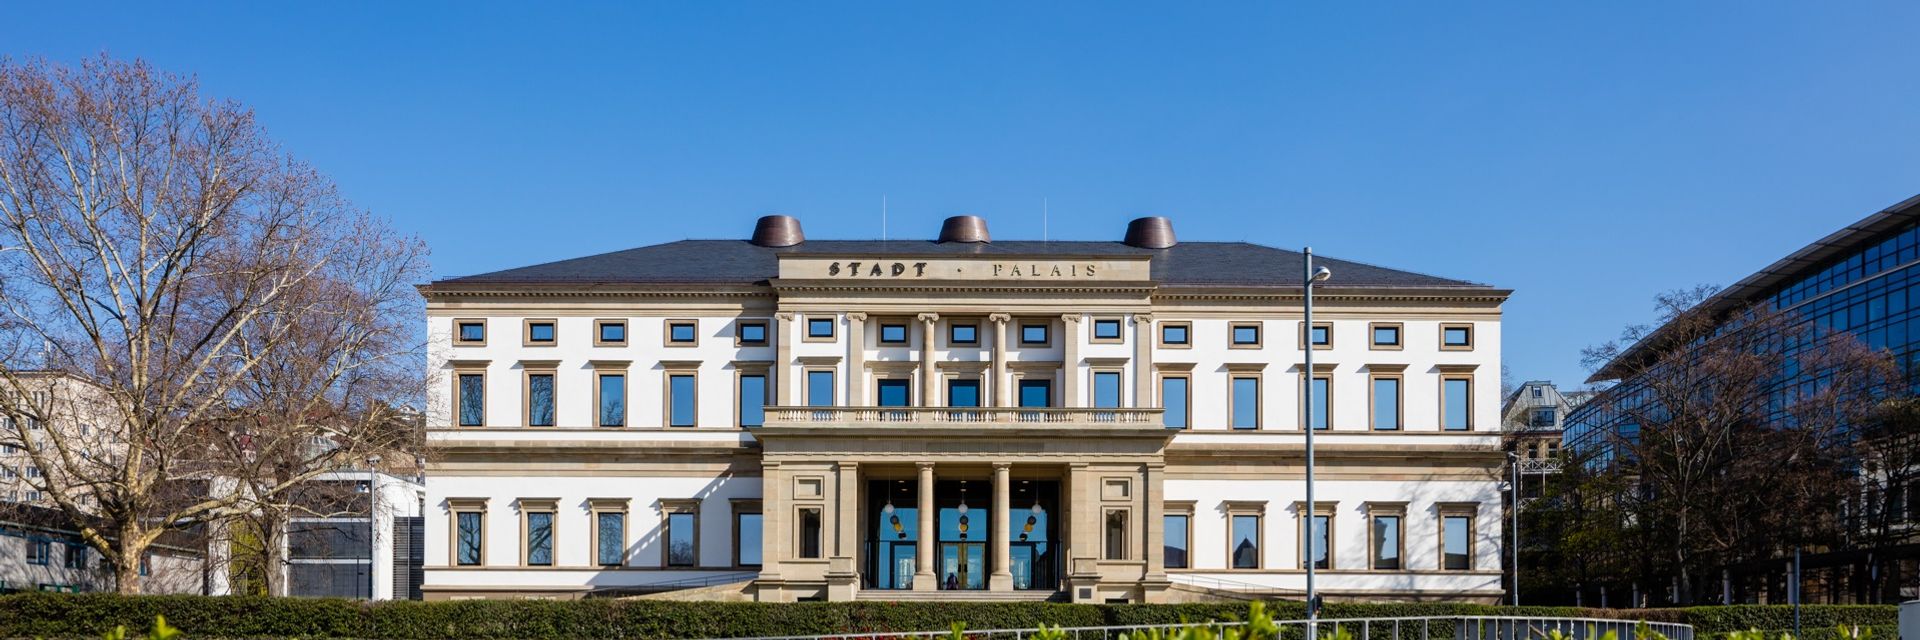 StadtPalais - Museum for Stuttgart